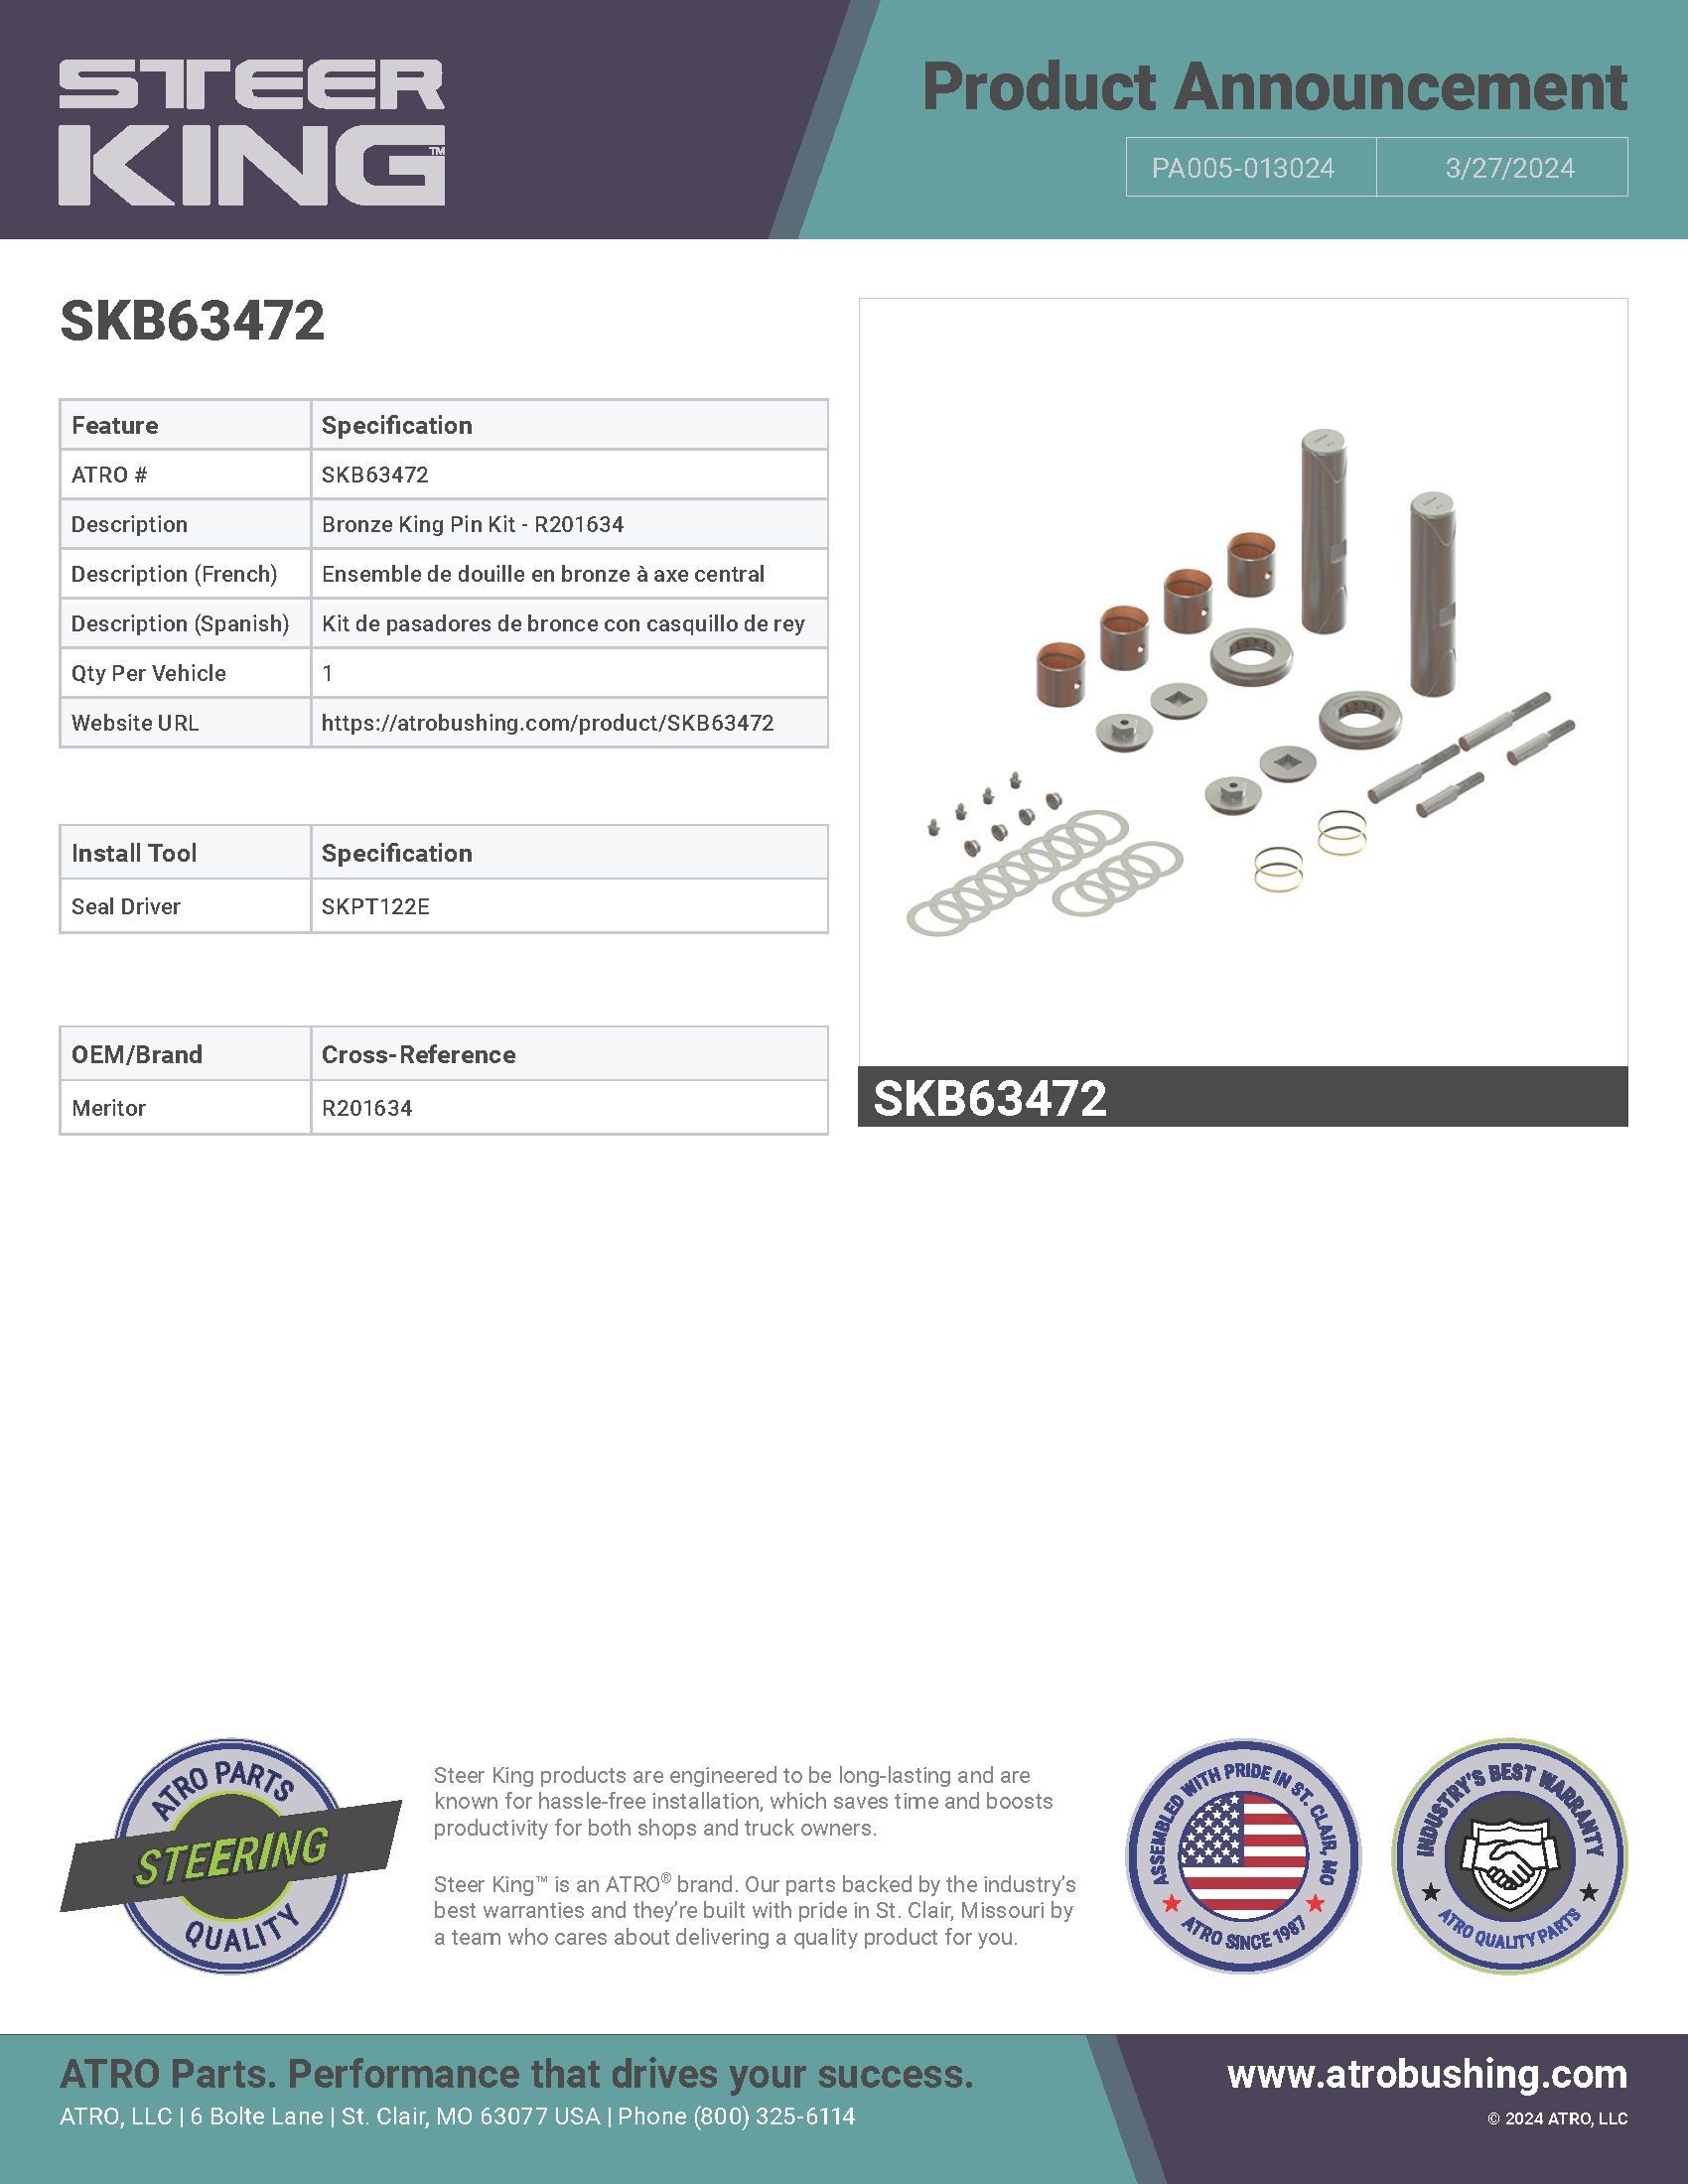 SKB63472 Bronze King Pin Kit - R201634 PA005-013024